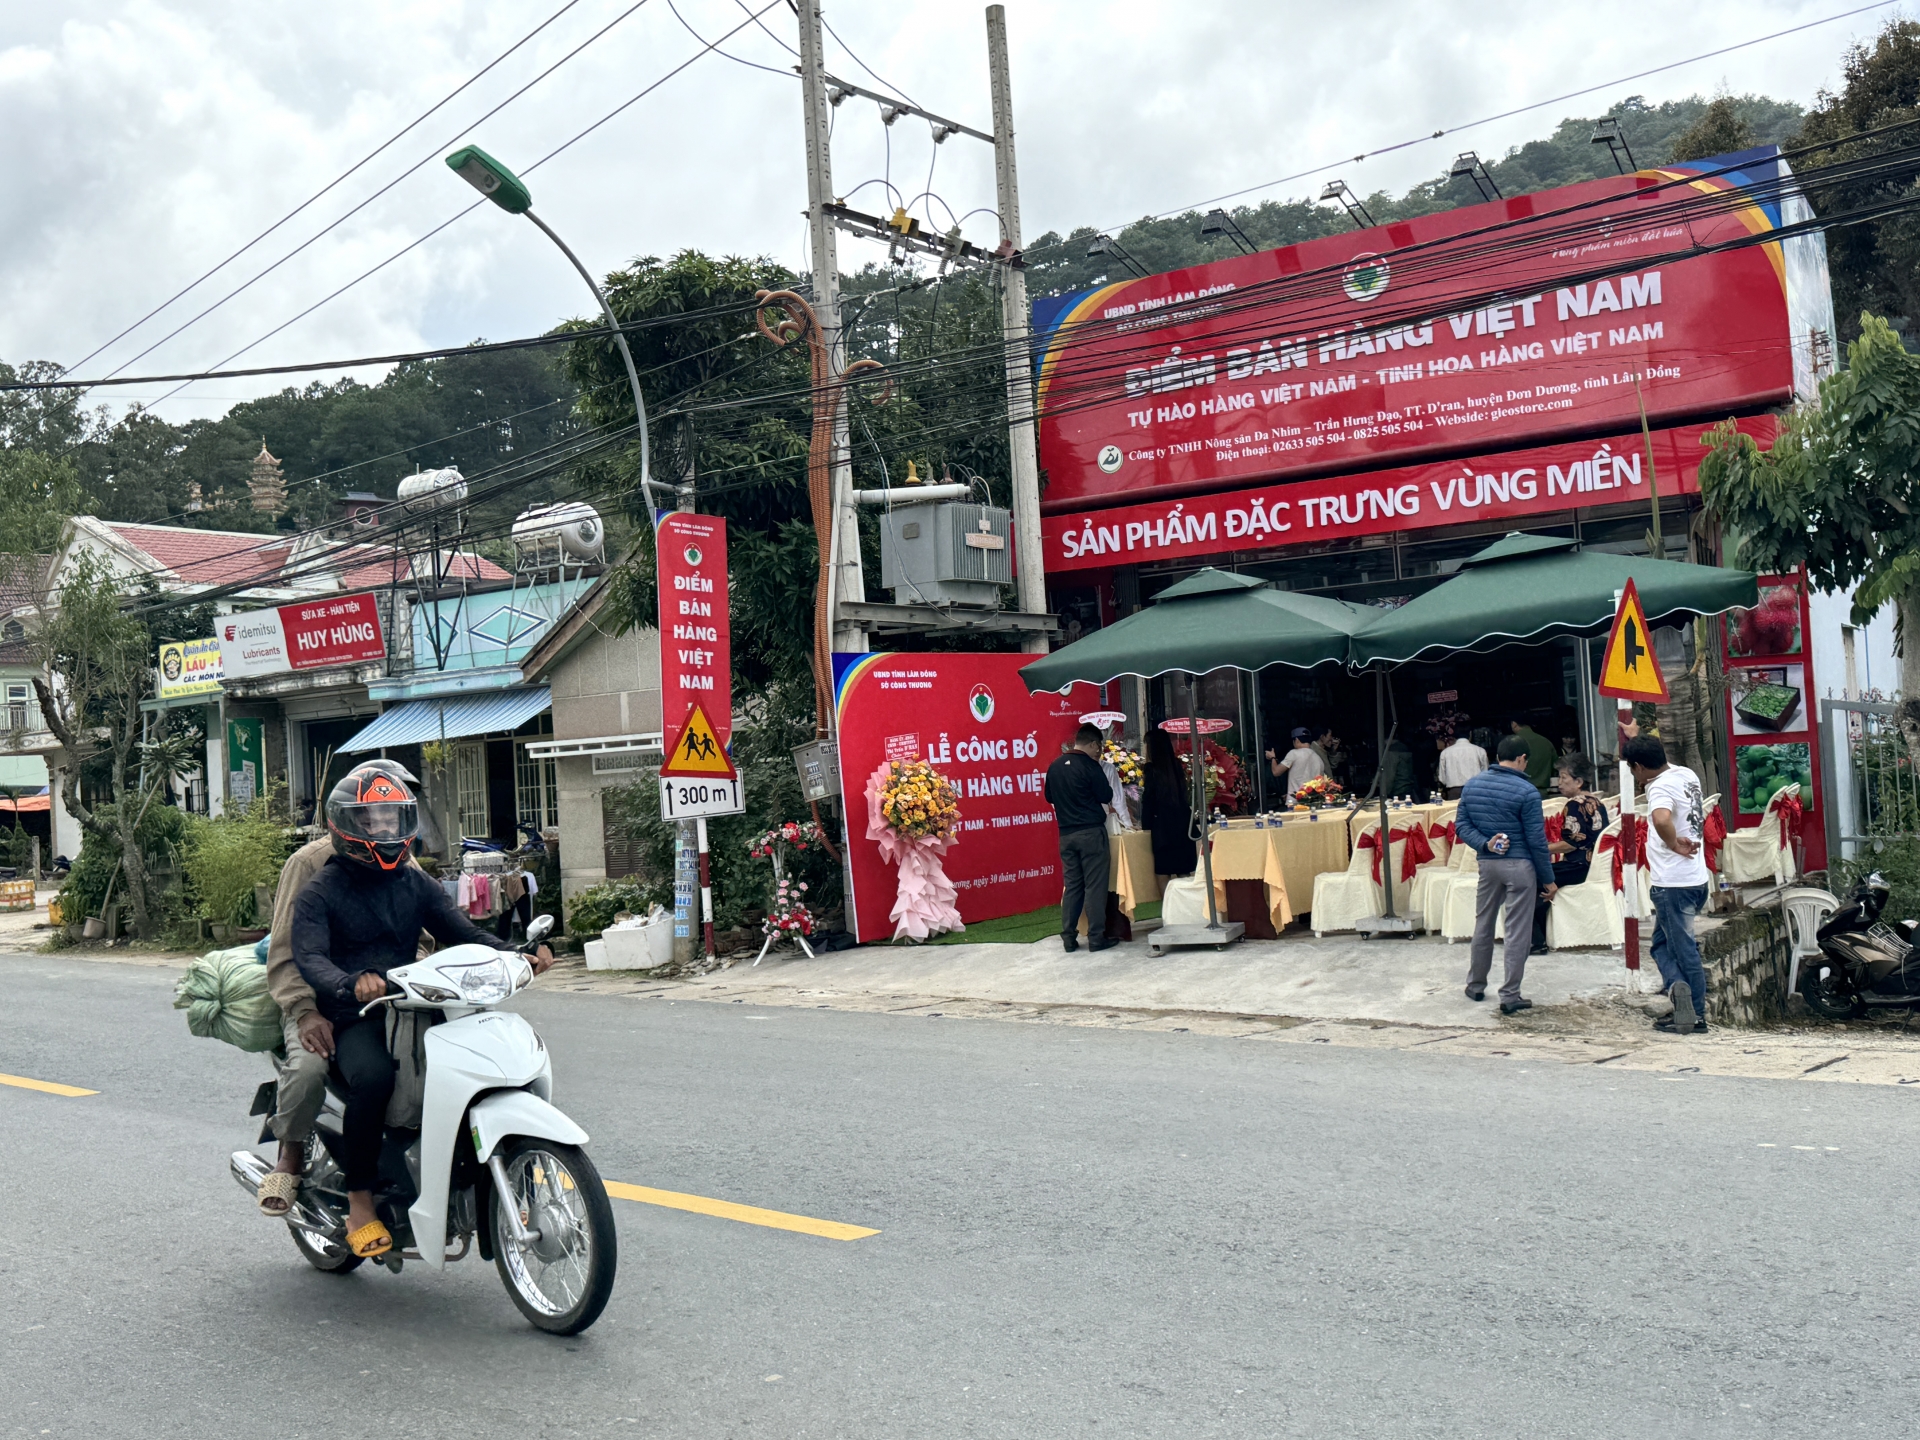 Điểm bán hàng Việt Nam nằm trên tuyến quốc lộ 27